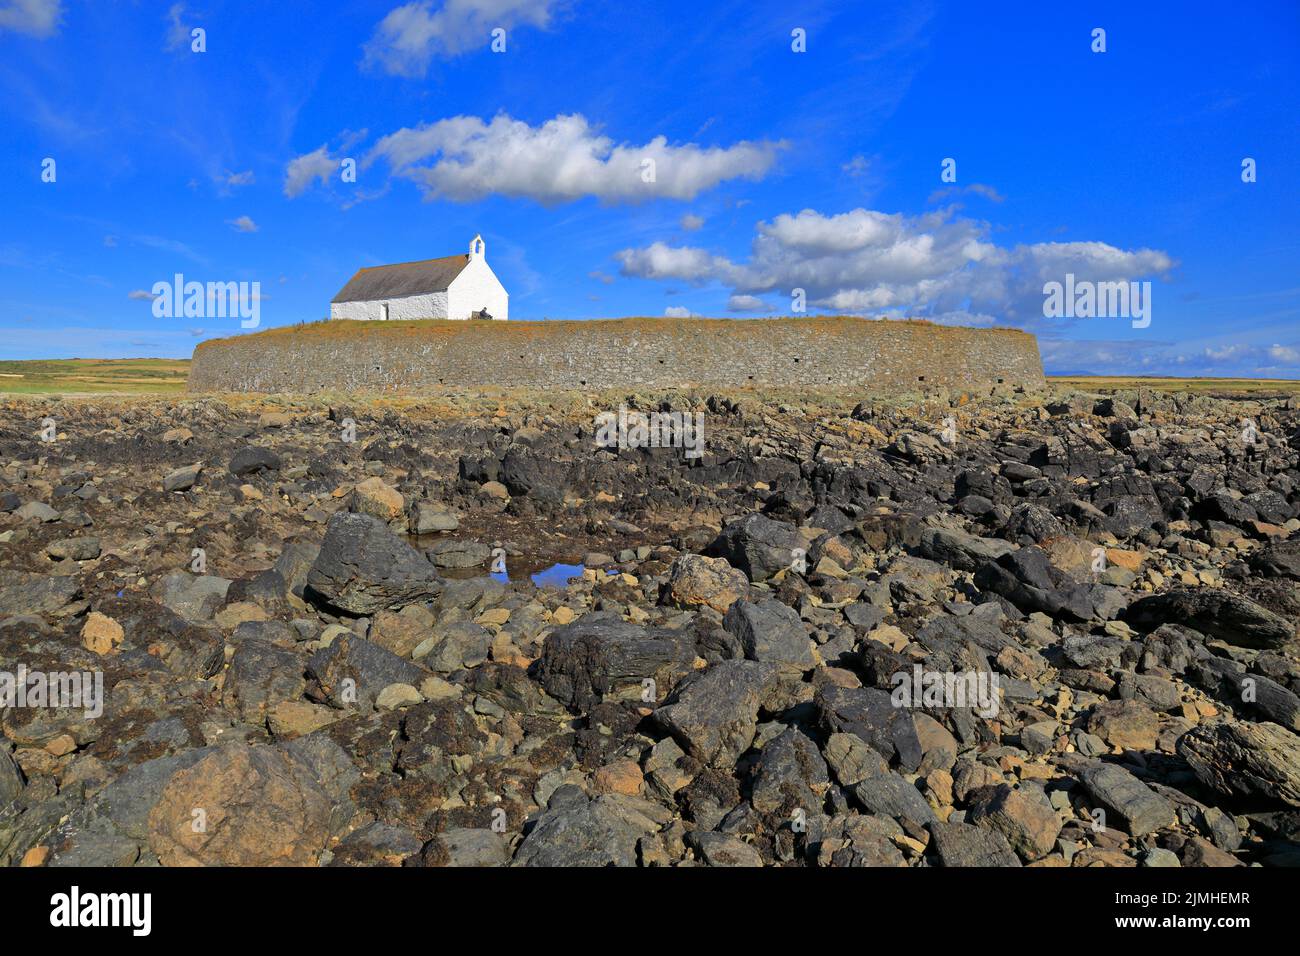 Chiesa di St Cwyfan a Porth Cwyfan in bassa marea, Aberffraw, Isola di Anglesey, Ynys Mon, Galles del Nord, REGNO UNITO. Foto Stock